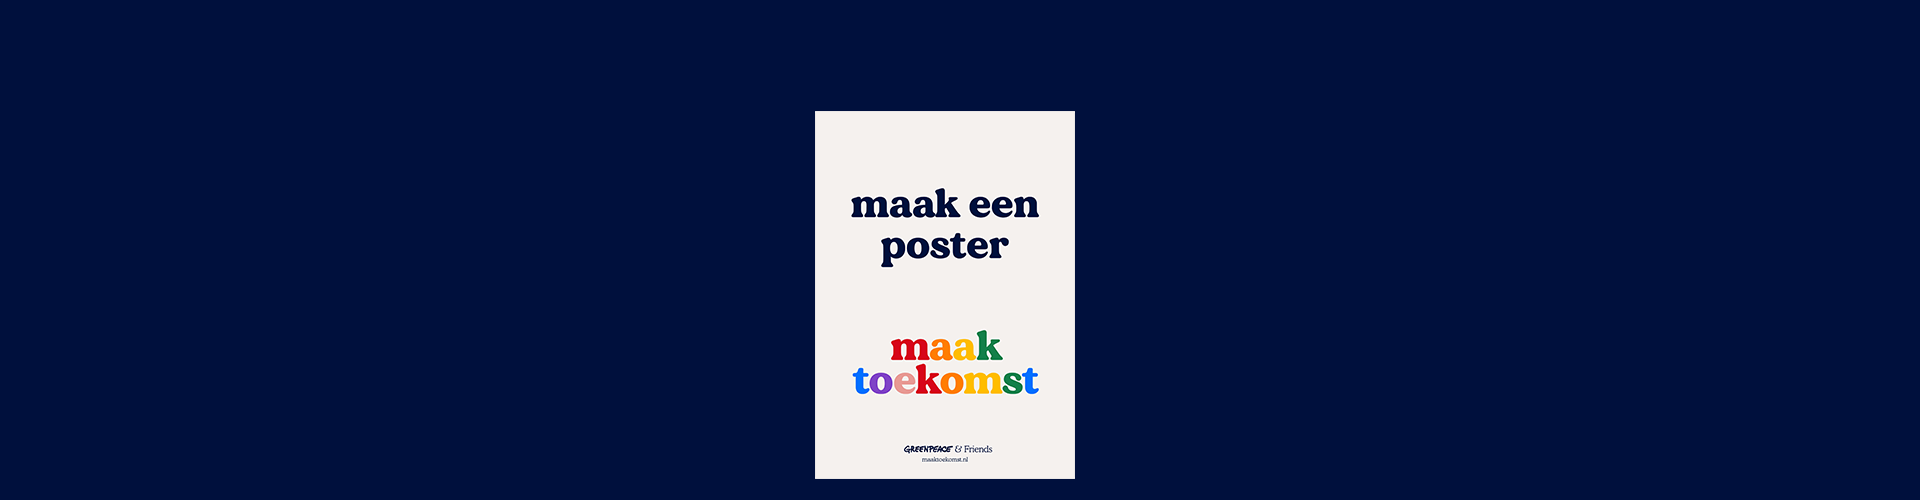 Plantage aanwijzing Toepassen Voorwaarden maak een poster, maak toekomst - Greenpeace Nederland -  Greenpeace Nederland